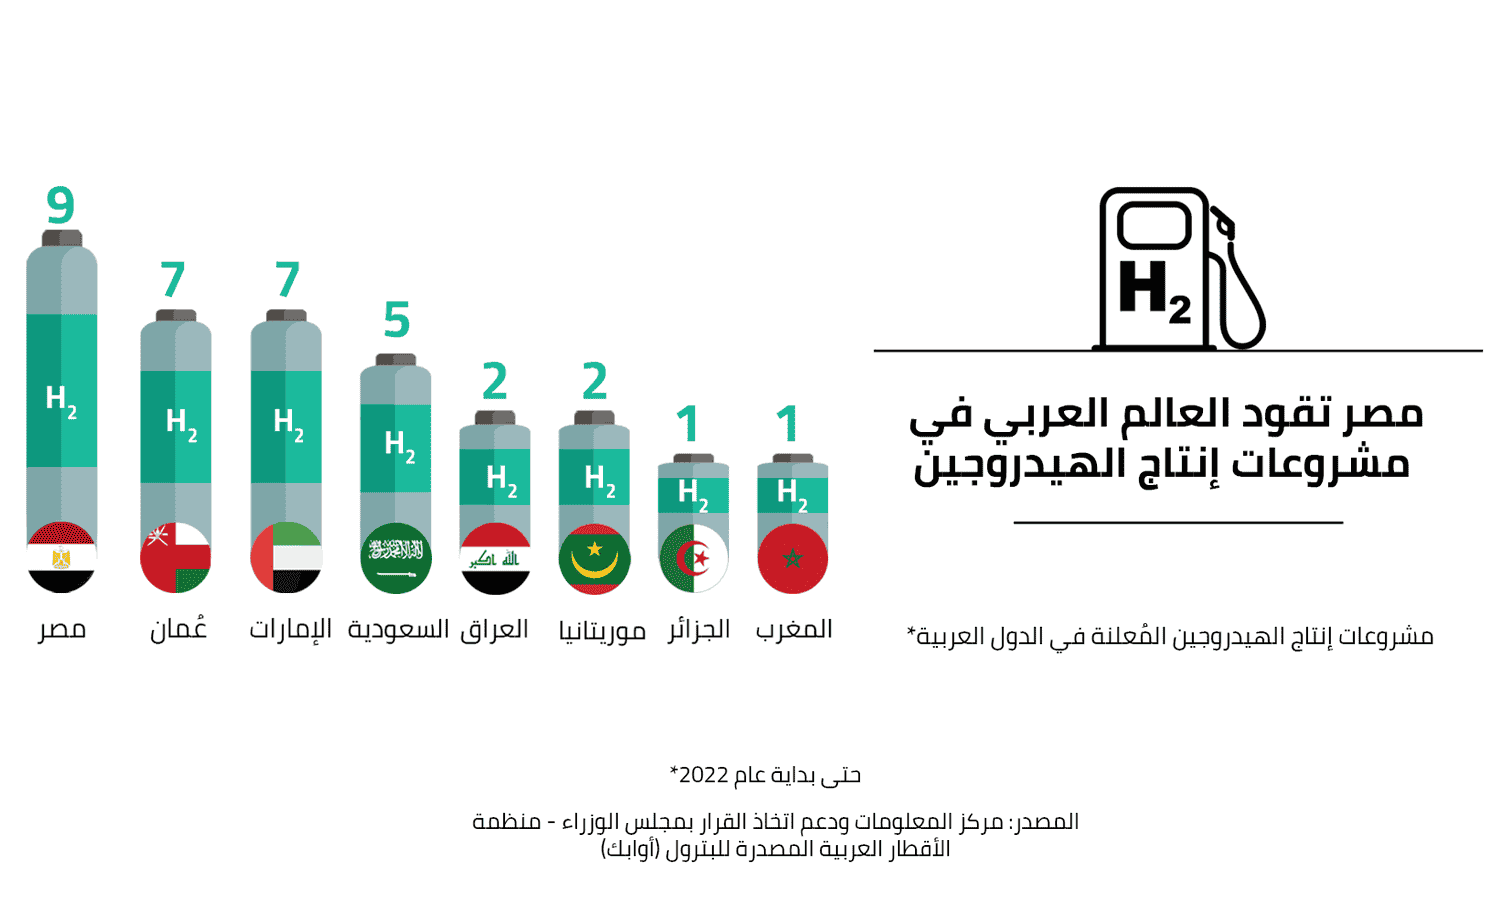 مصر الأولى عربيا في عدد مشروعات انتاج الهيدروجين حتى بداية 2022
